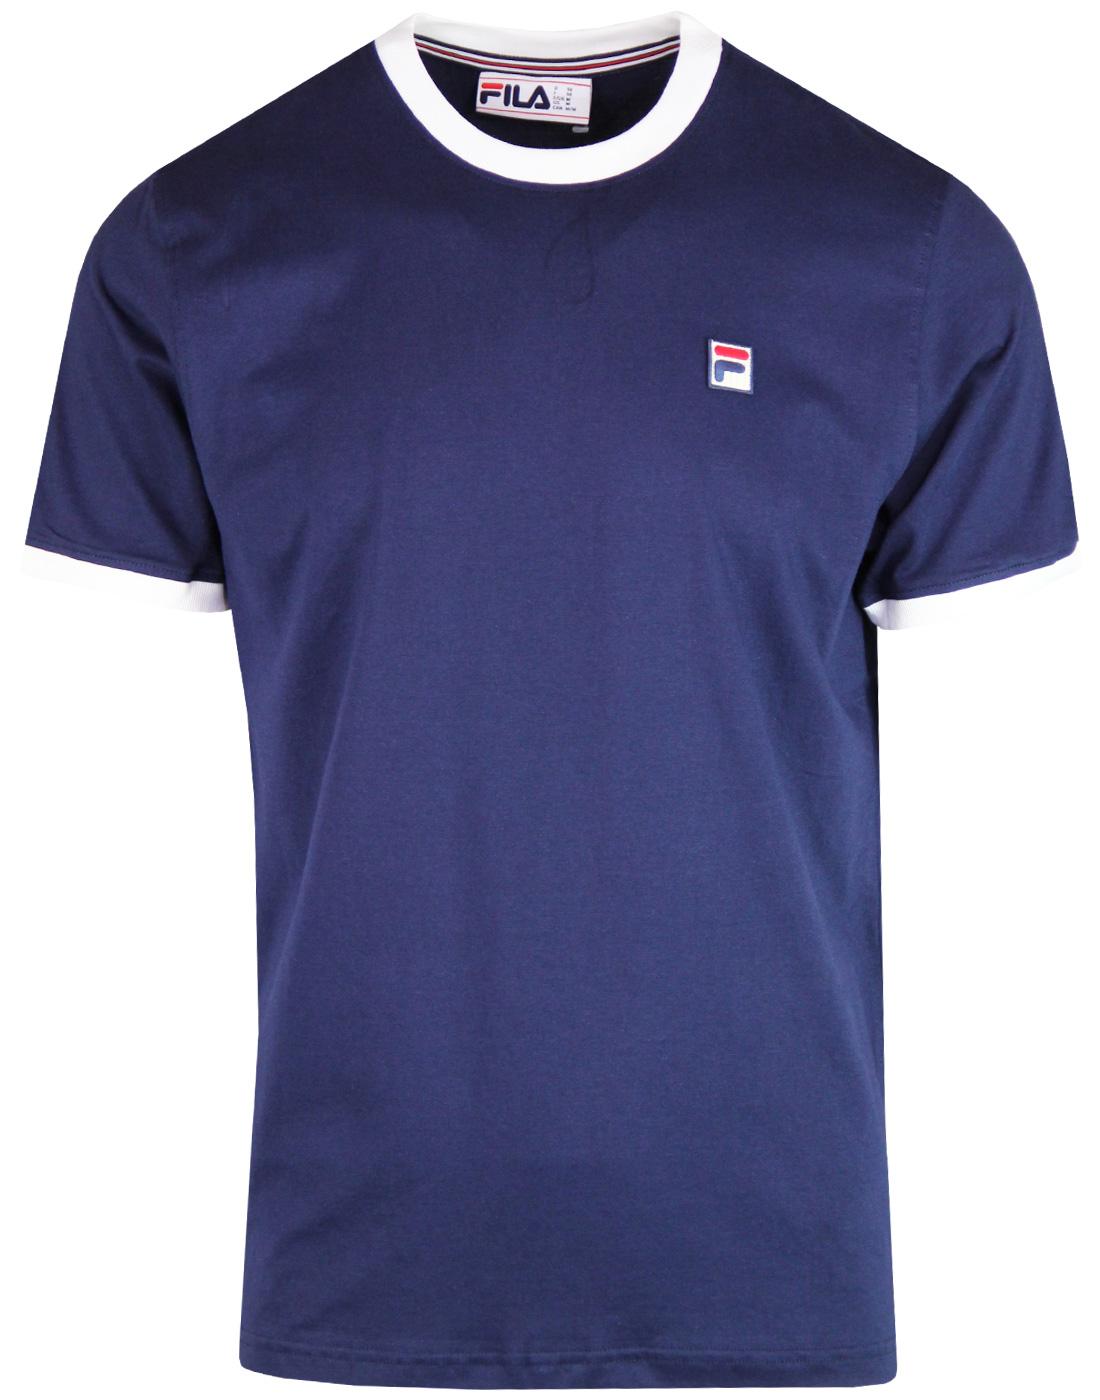 Marconi FILA VINTAGE Men's Retro Ringer T-Shirt P